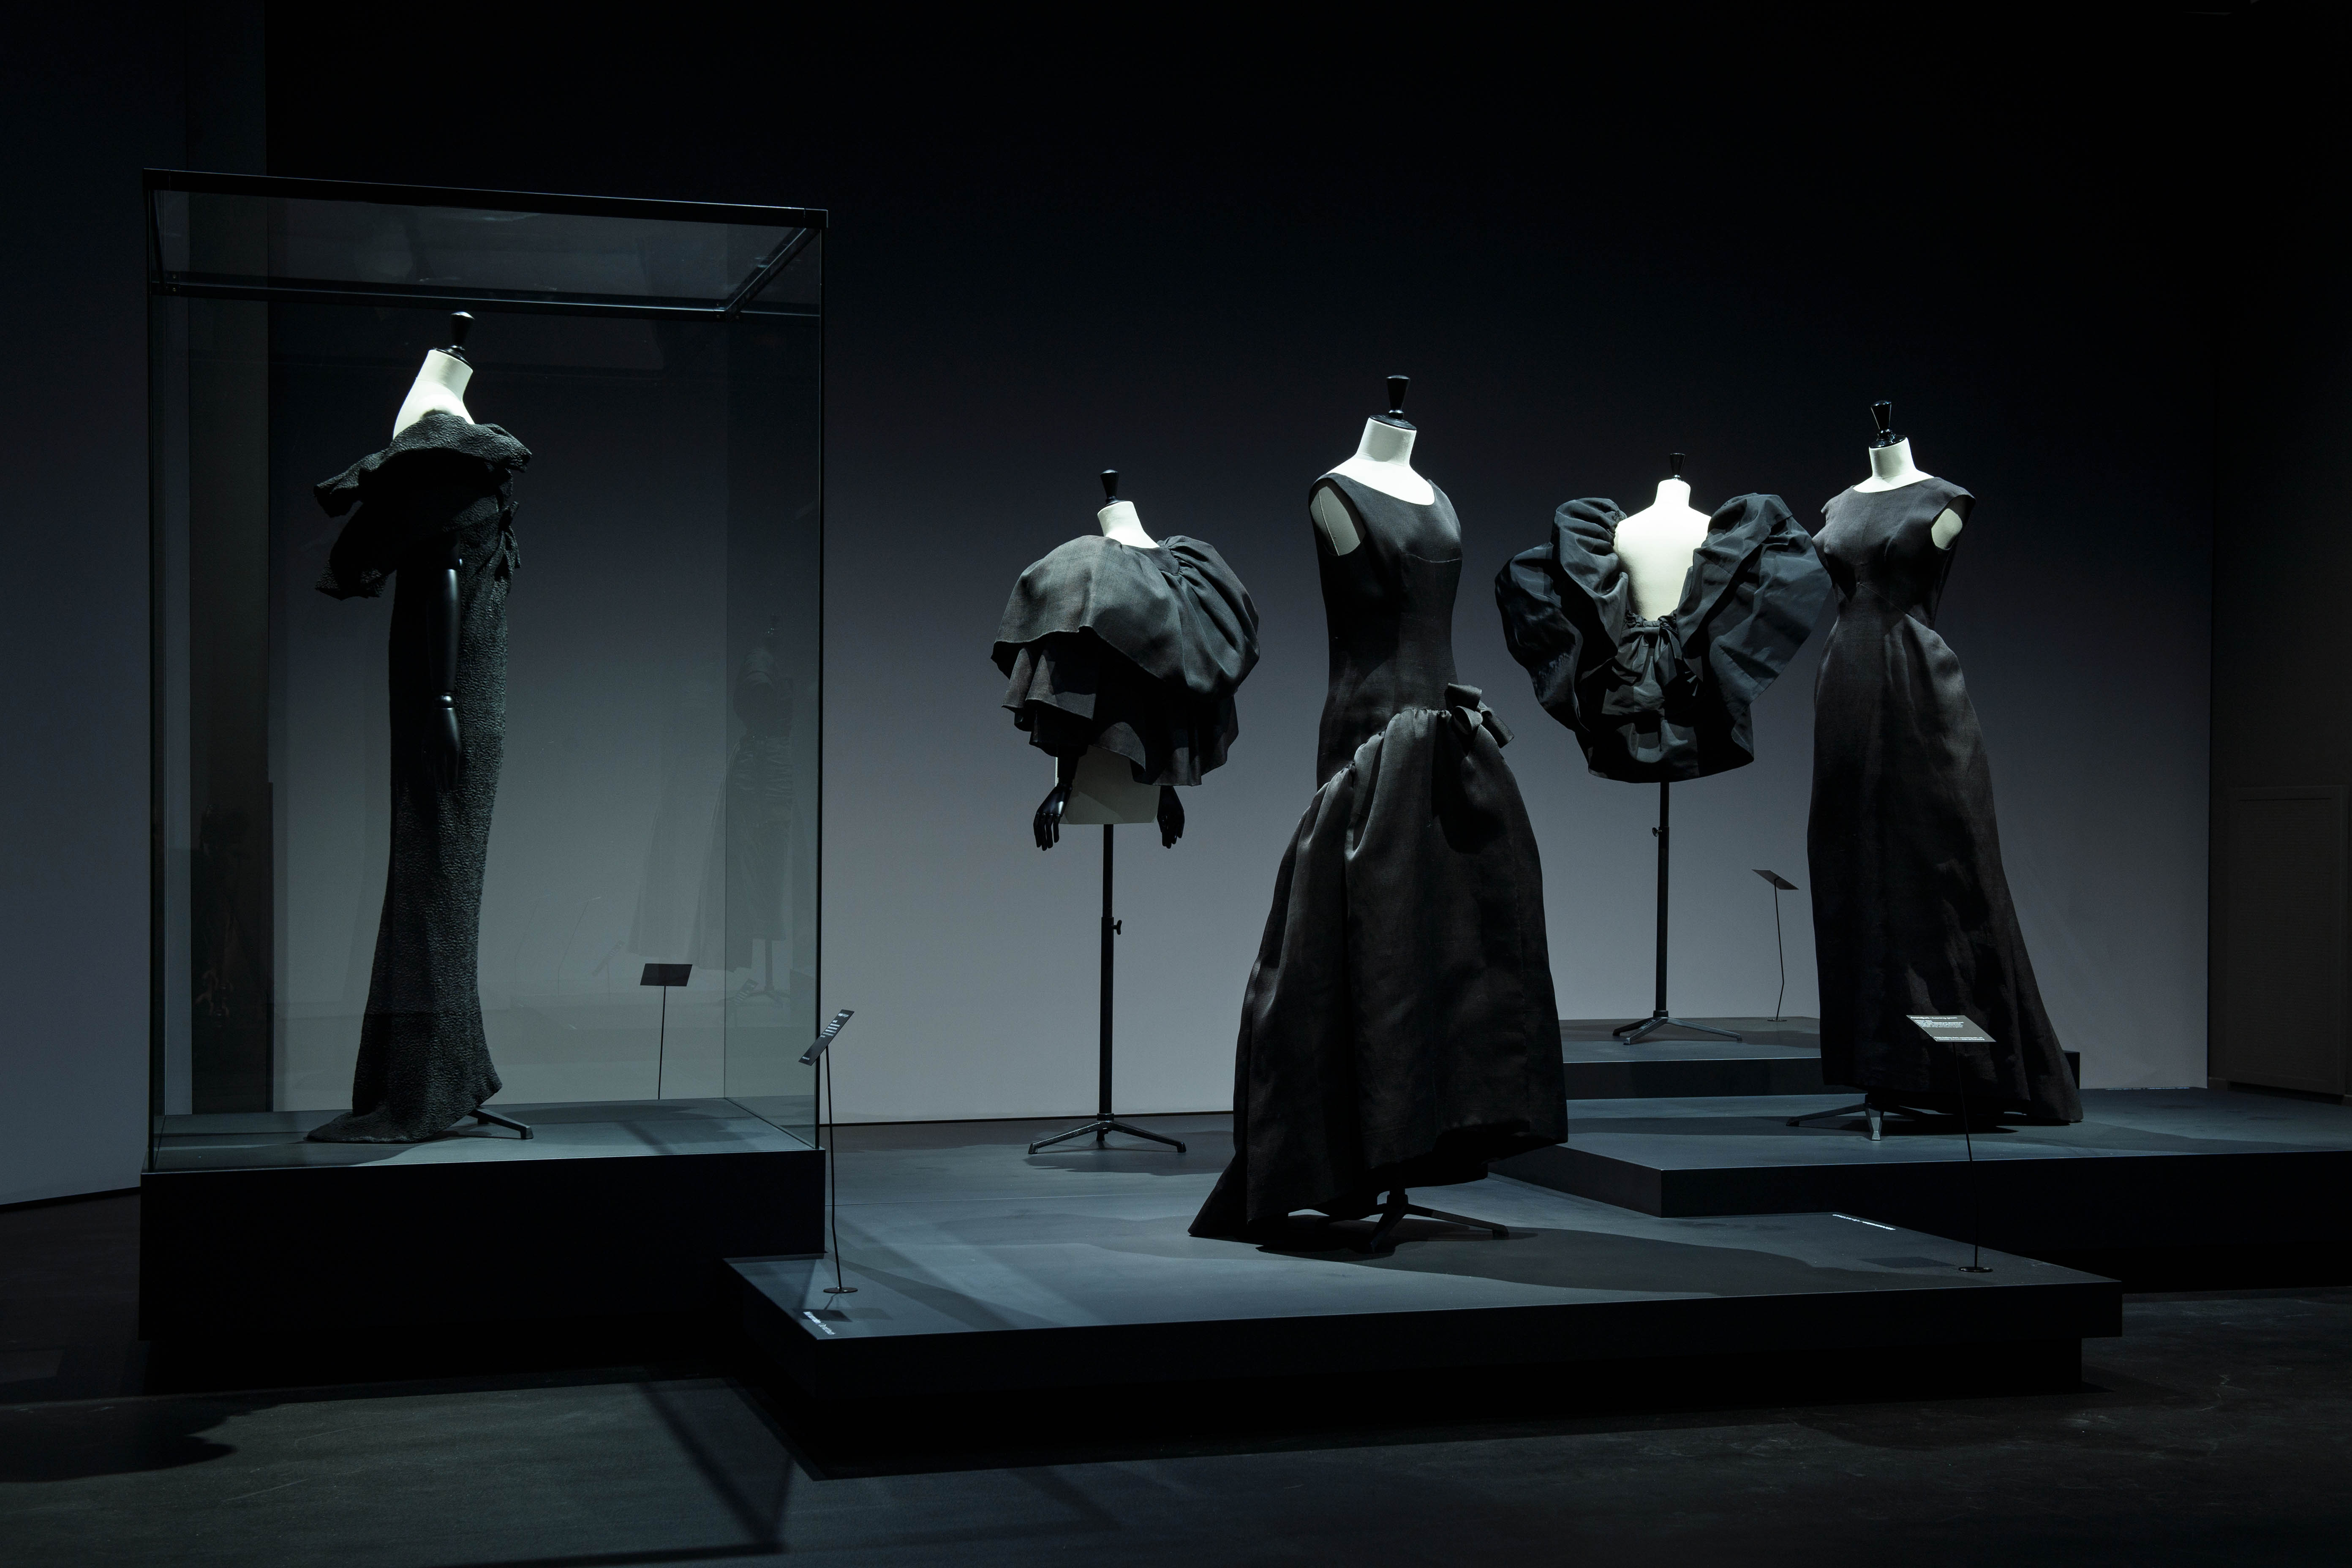 Kunstmuseum Den Haag presents an ode to Cristóbal Balenciaga's